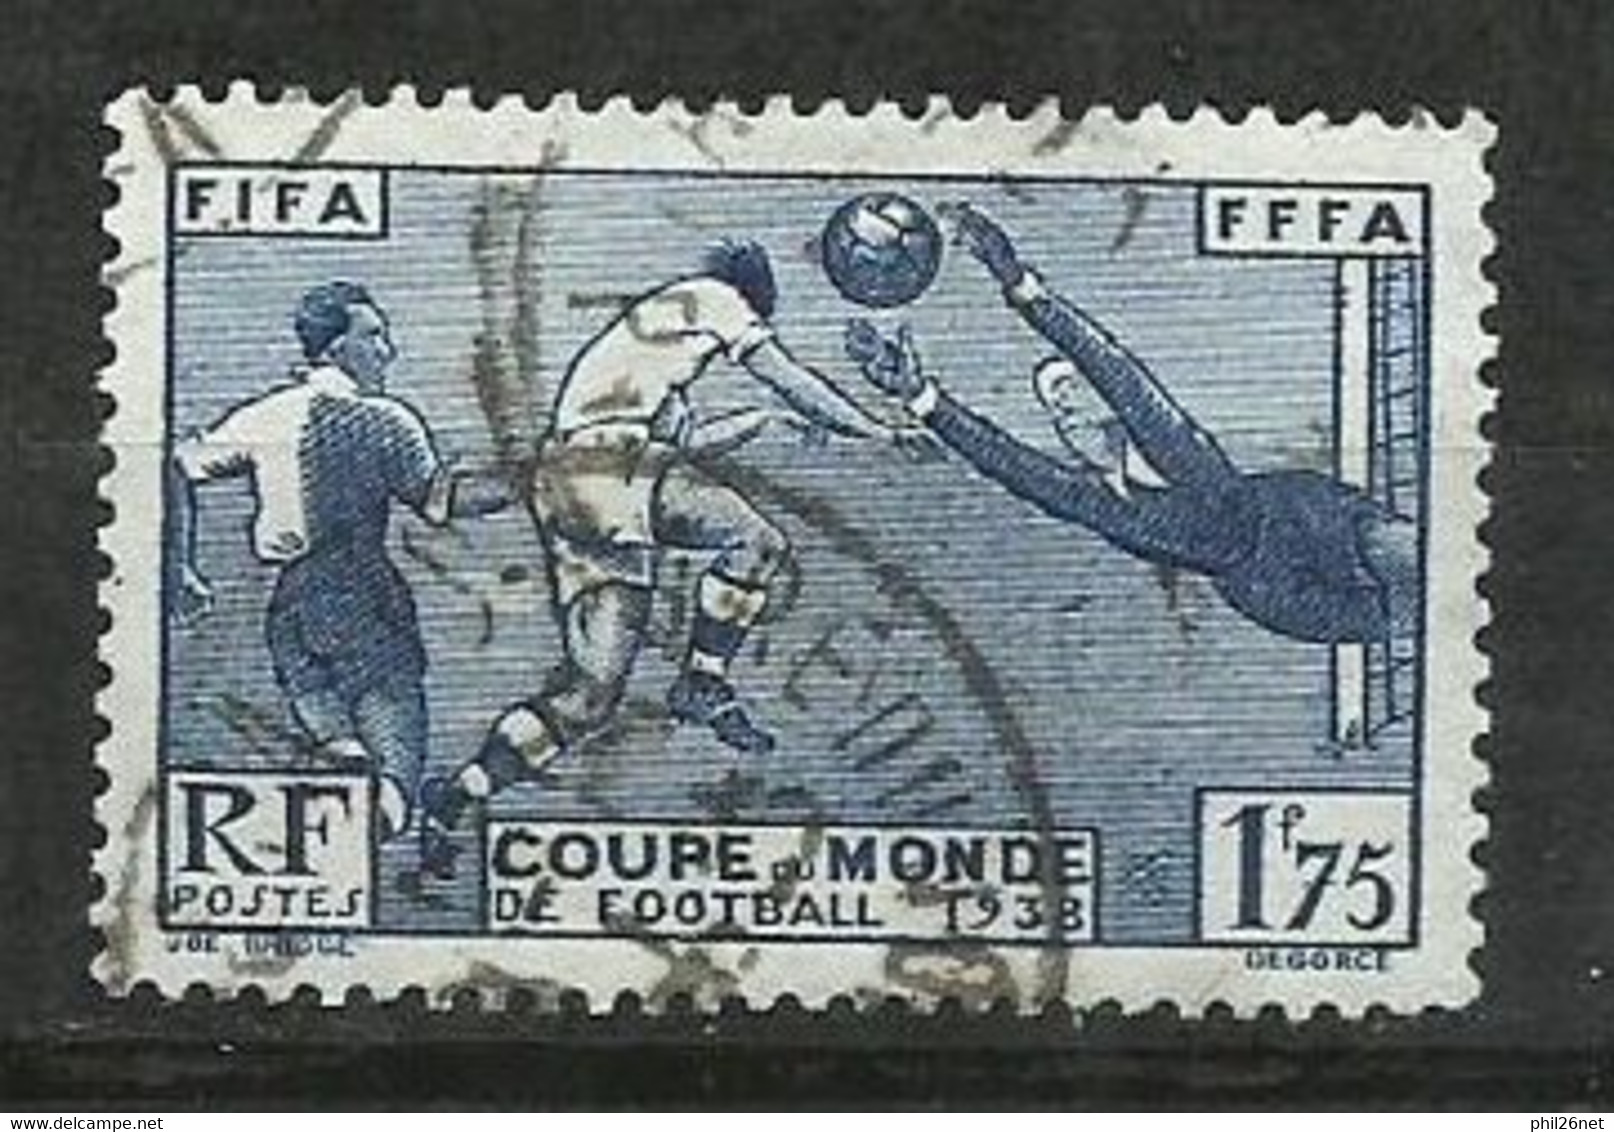 France N° 396  Football Coupe Du Monde Paris  1938    Oblitéré B/T B      Voir Scans      Soldé ! ! ! - 1938 – Frankreich